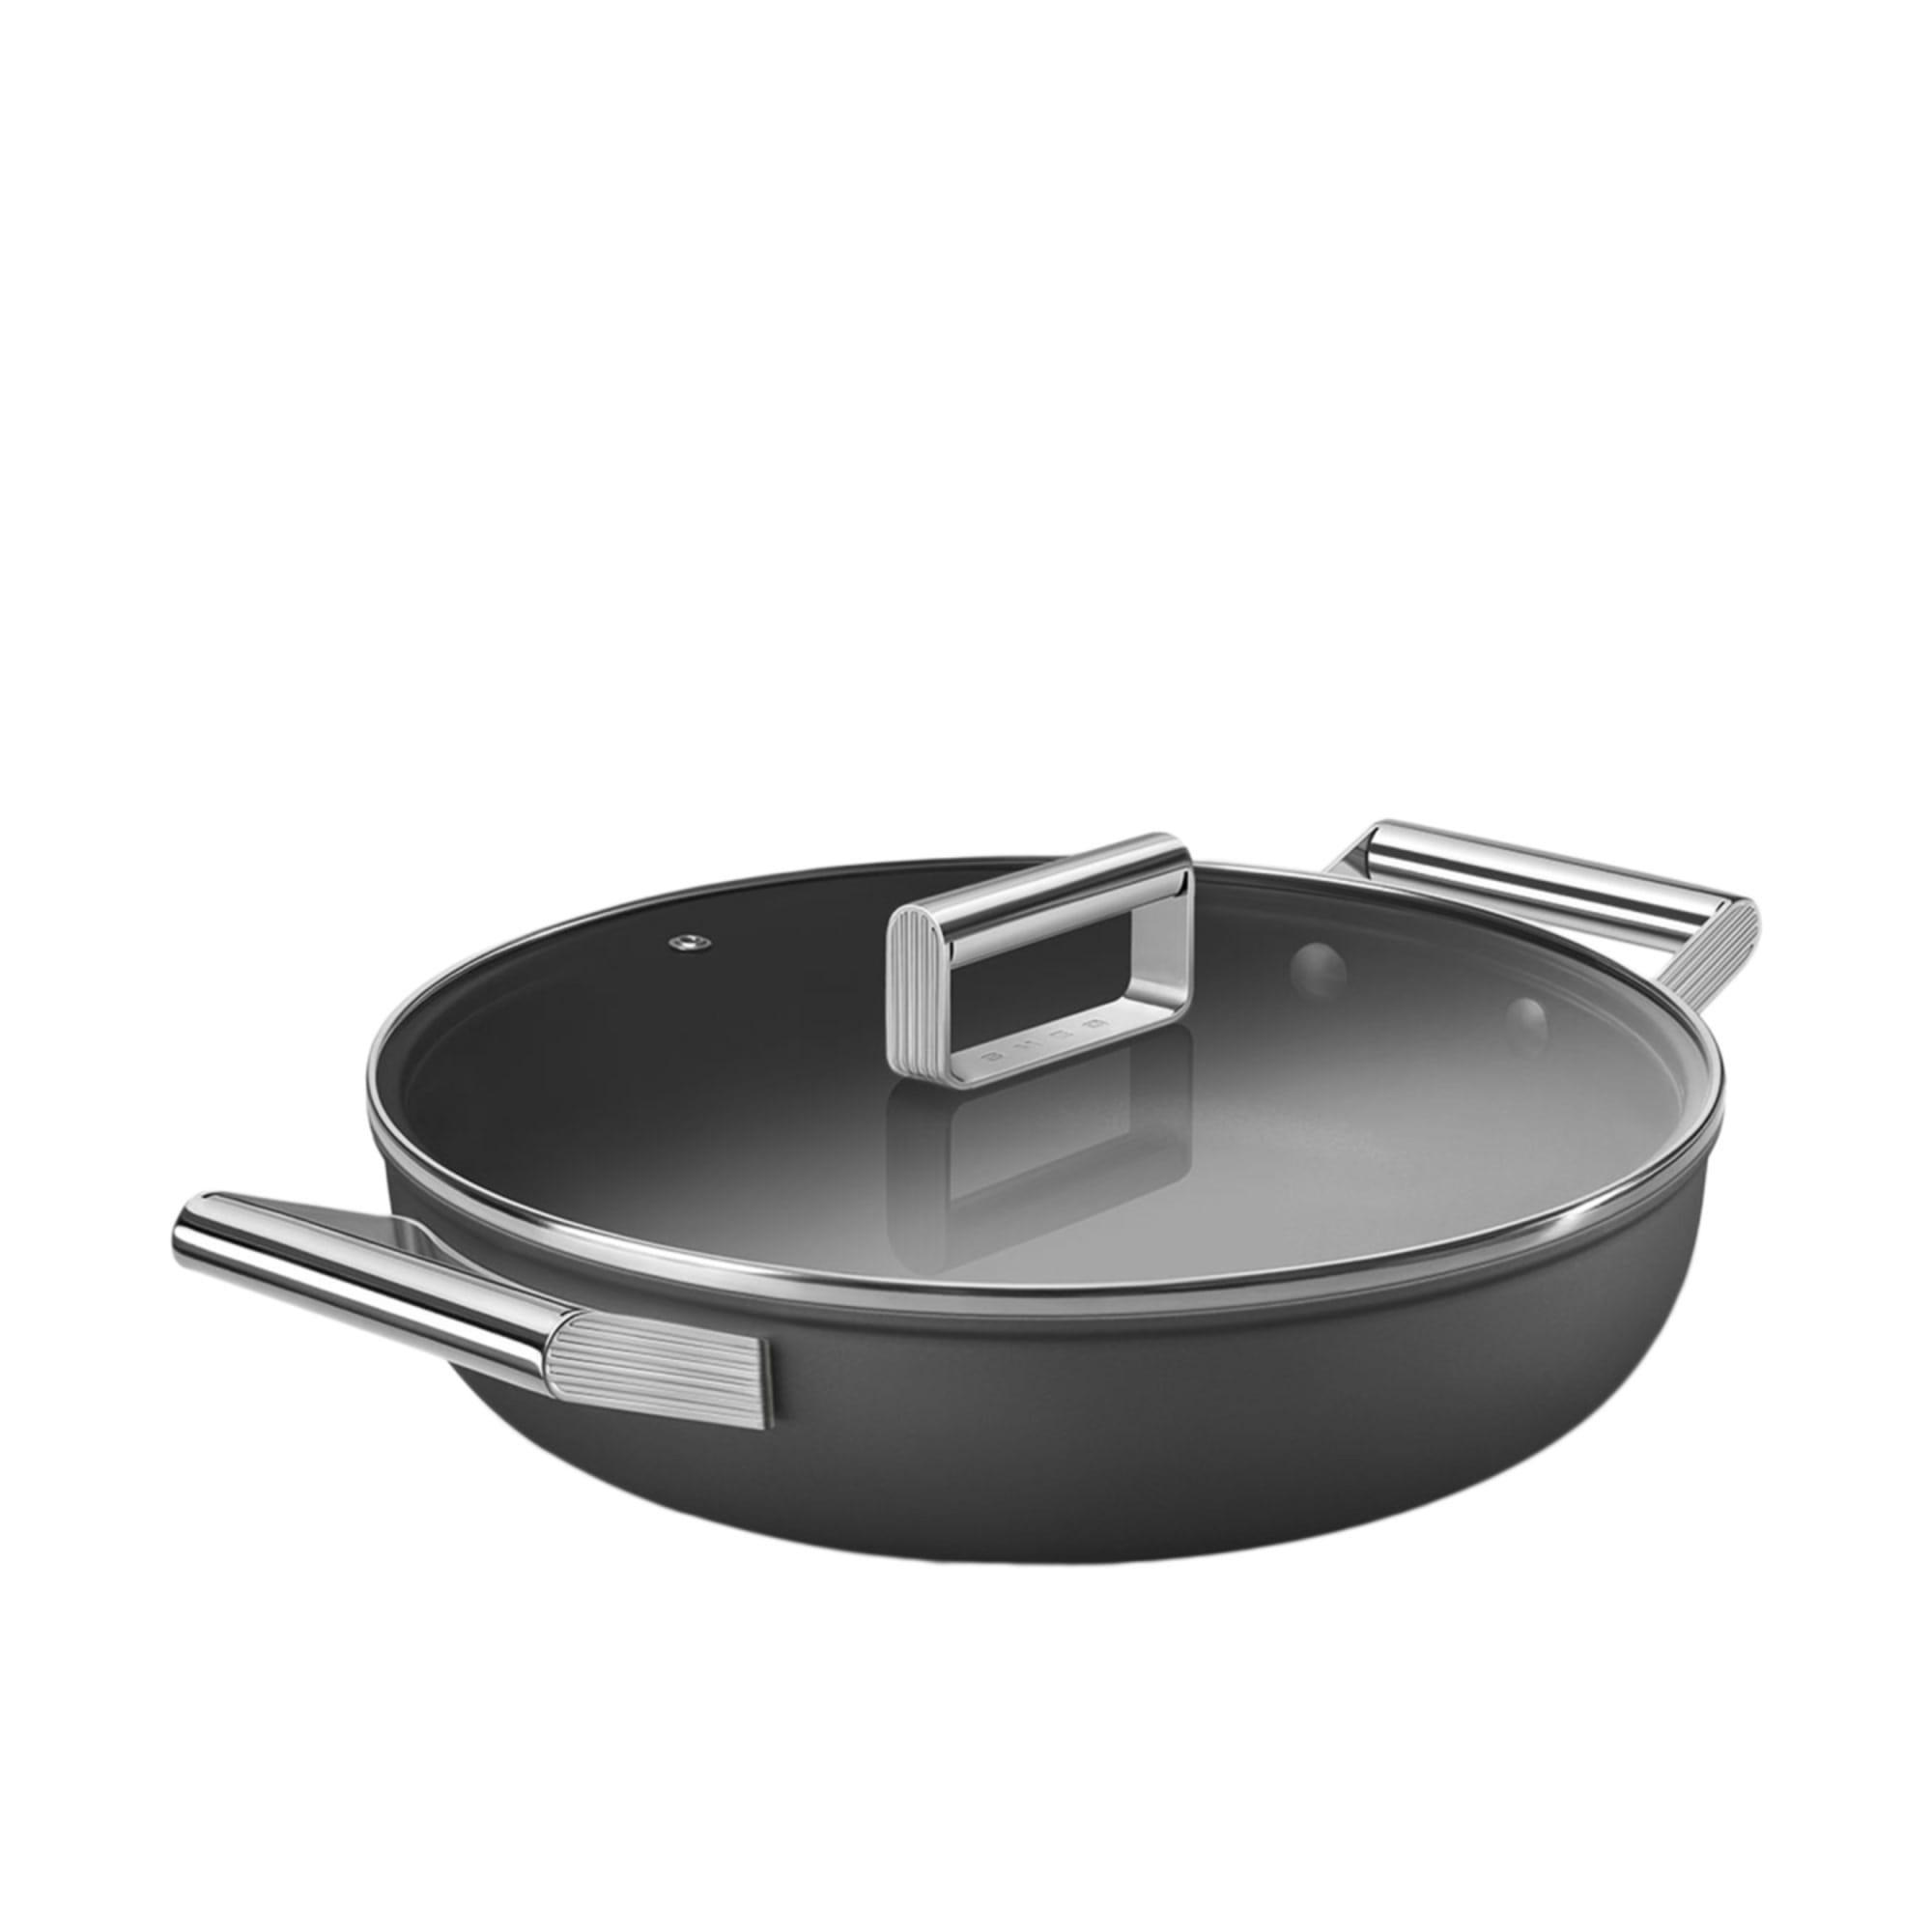 Smeg Non Stick Chef's Pan with Lid 28cm - 3.7L Black Image 6